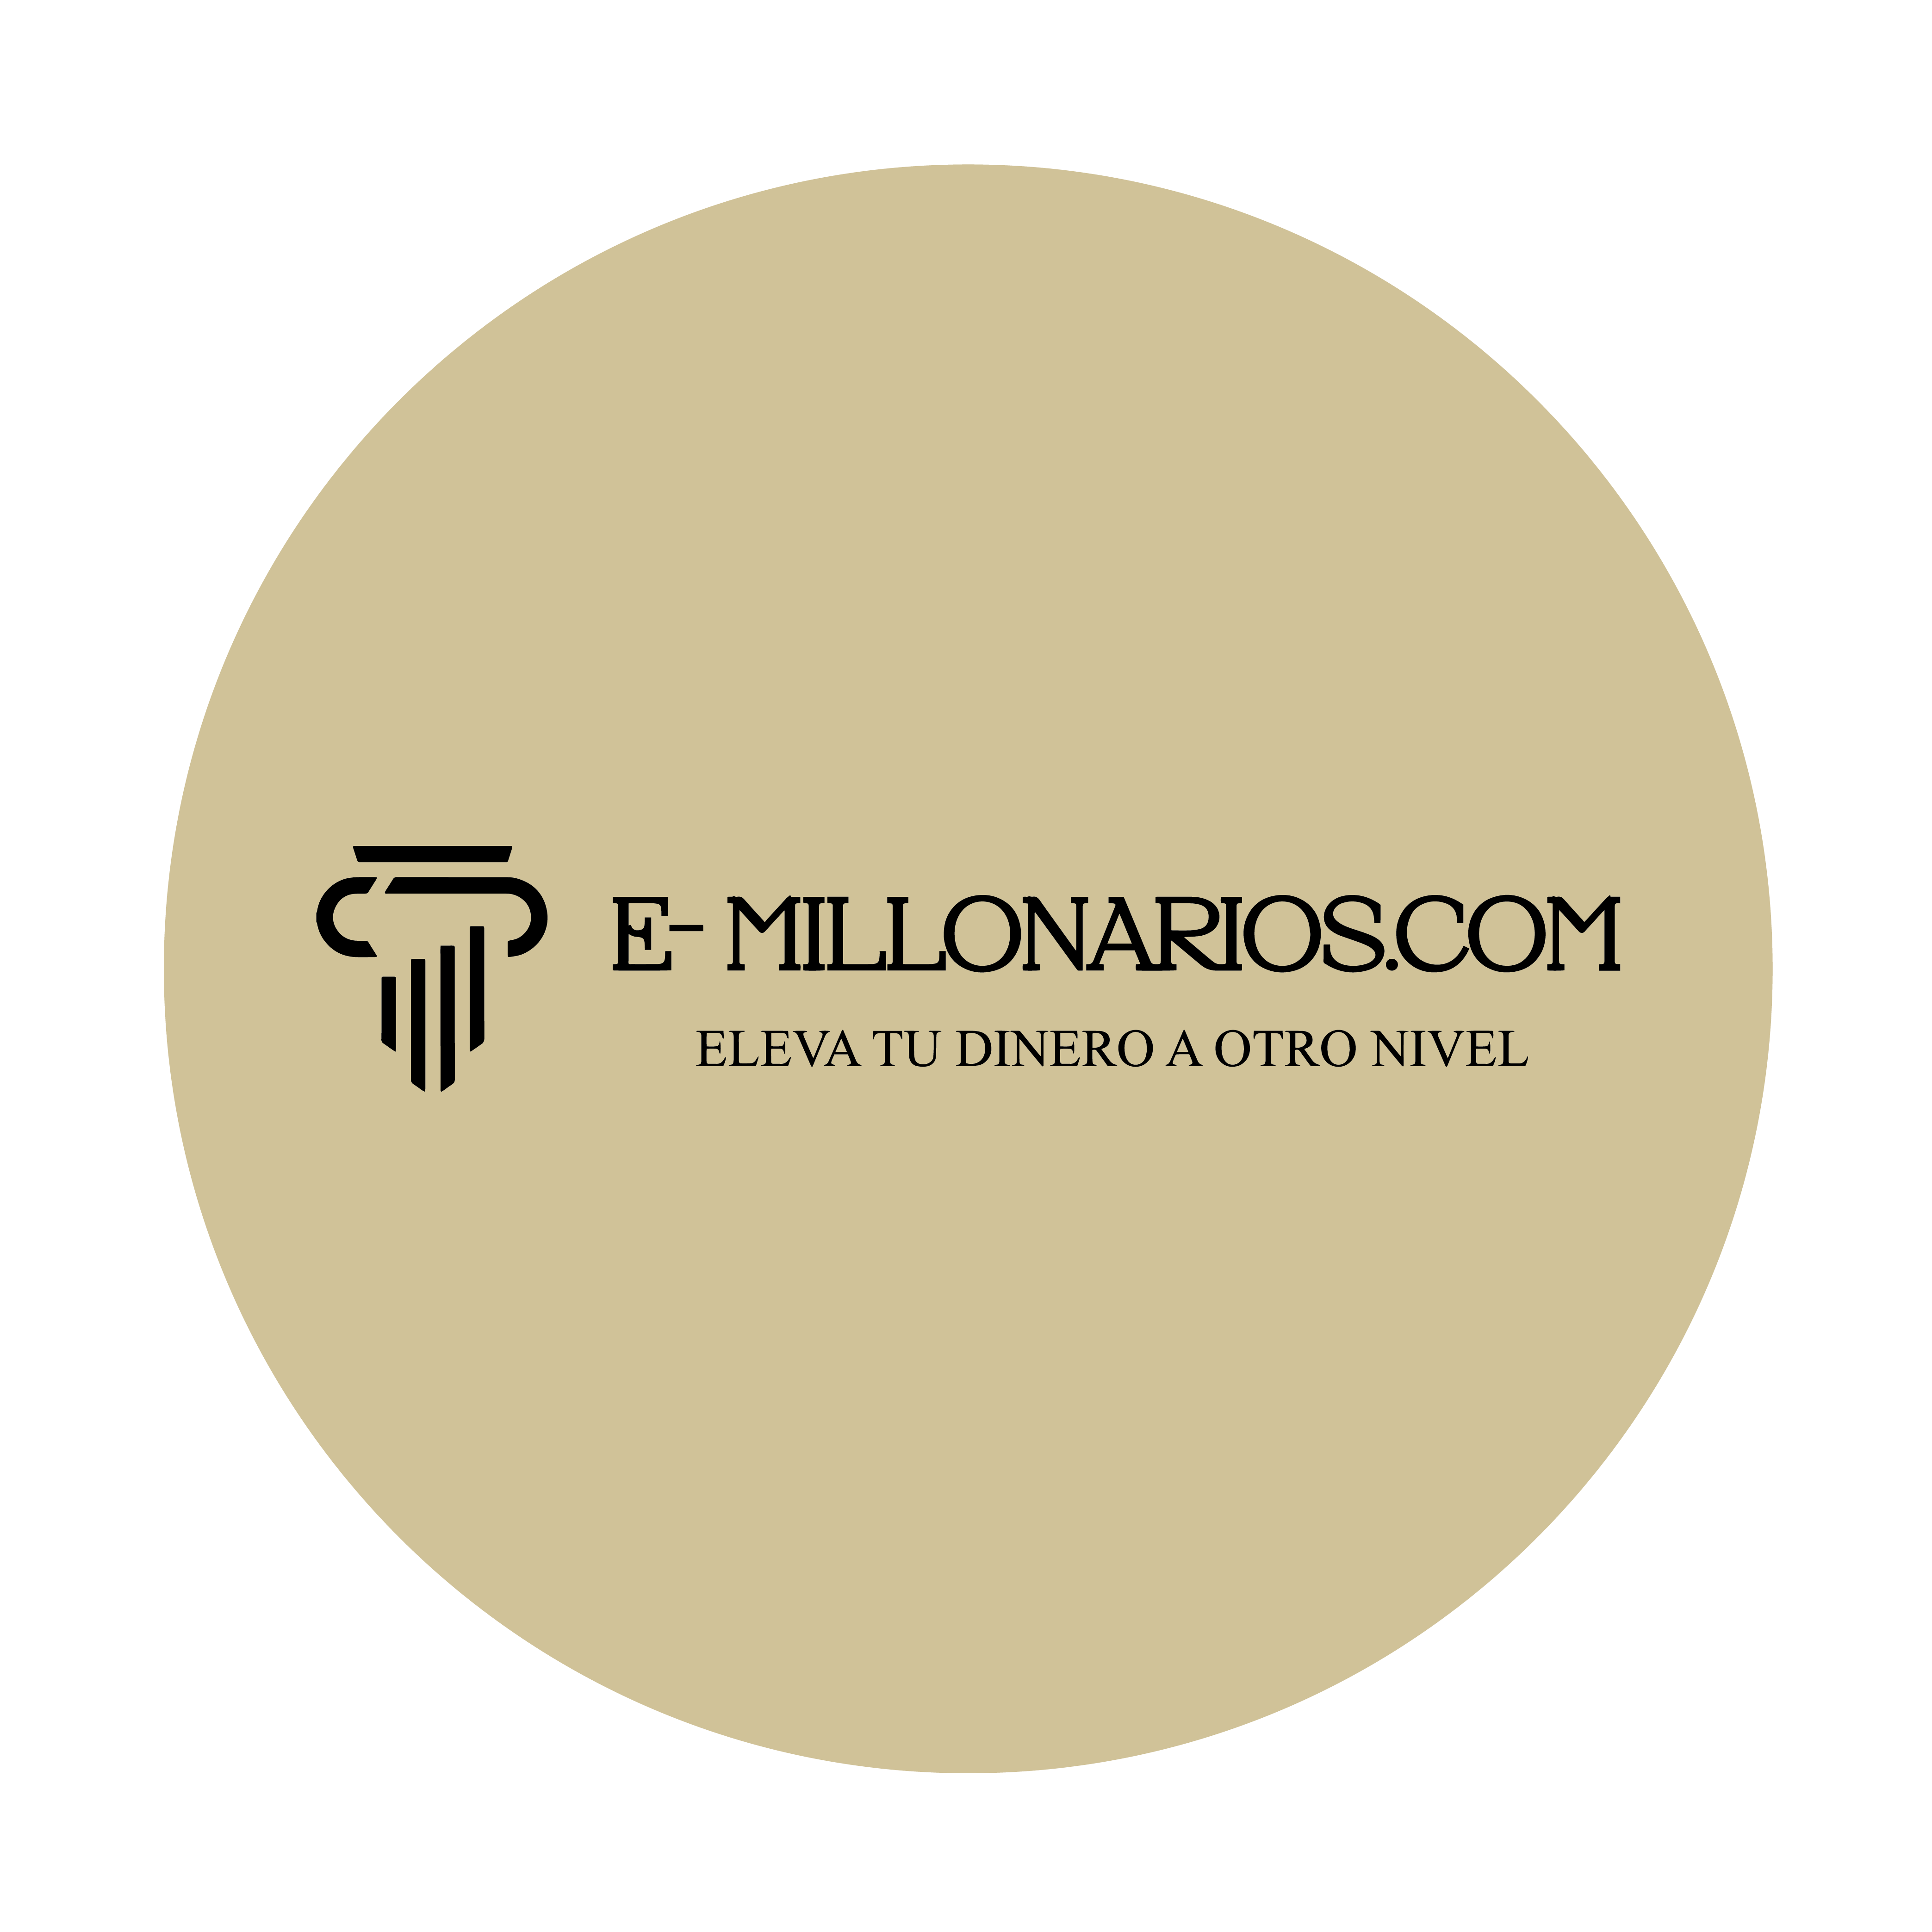 Logotipo e-millonarios educacion financiera